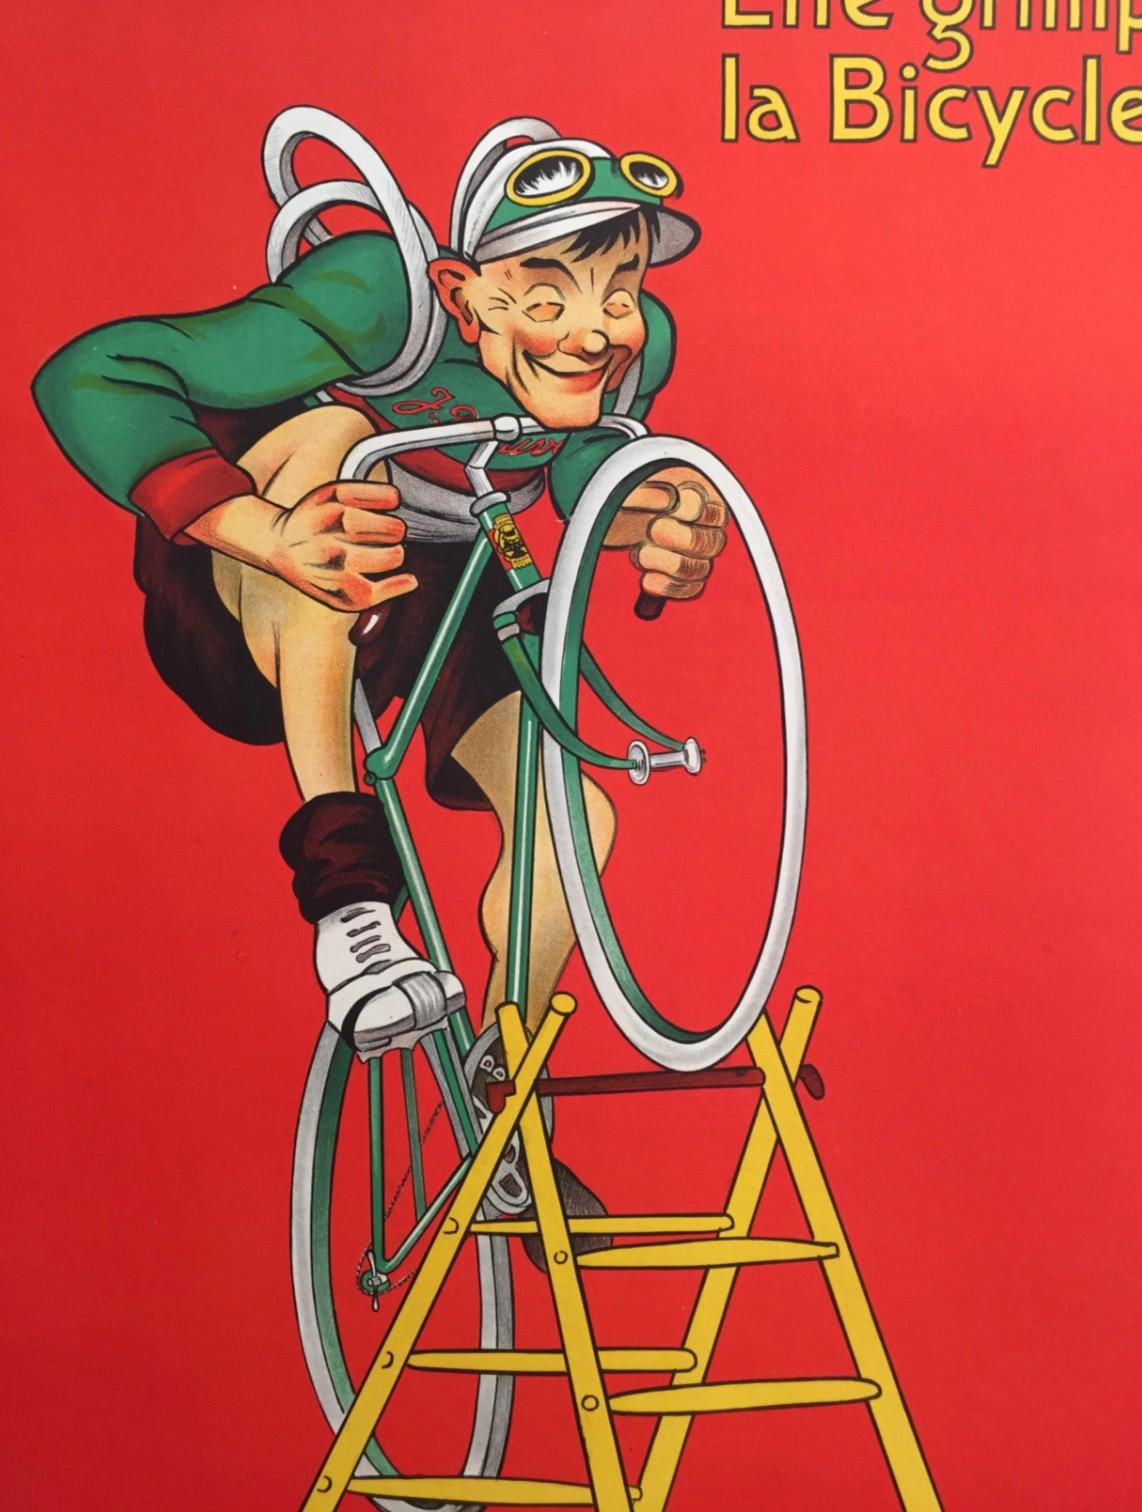 Une affiche originale de 1919, un must pour les amateurs de cyclisme ! Cette affiche est une représentation humoristique d'un homme qui essaie de monter à vélo sur une échelle sans les rayons. Les couleurs sont éclatantes, le poster a été doublé de